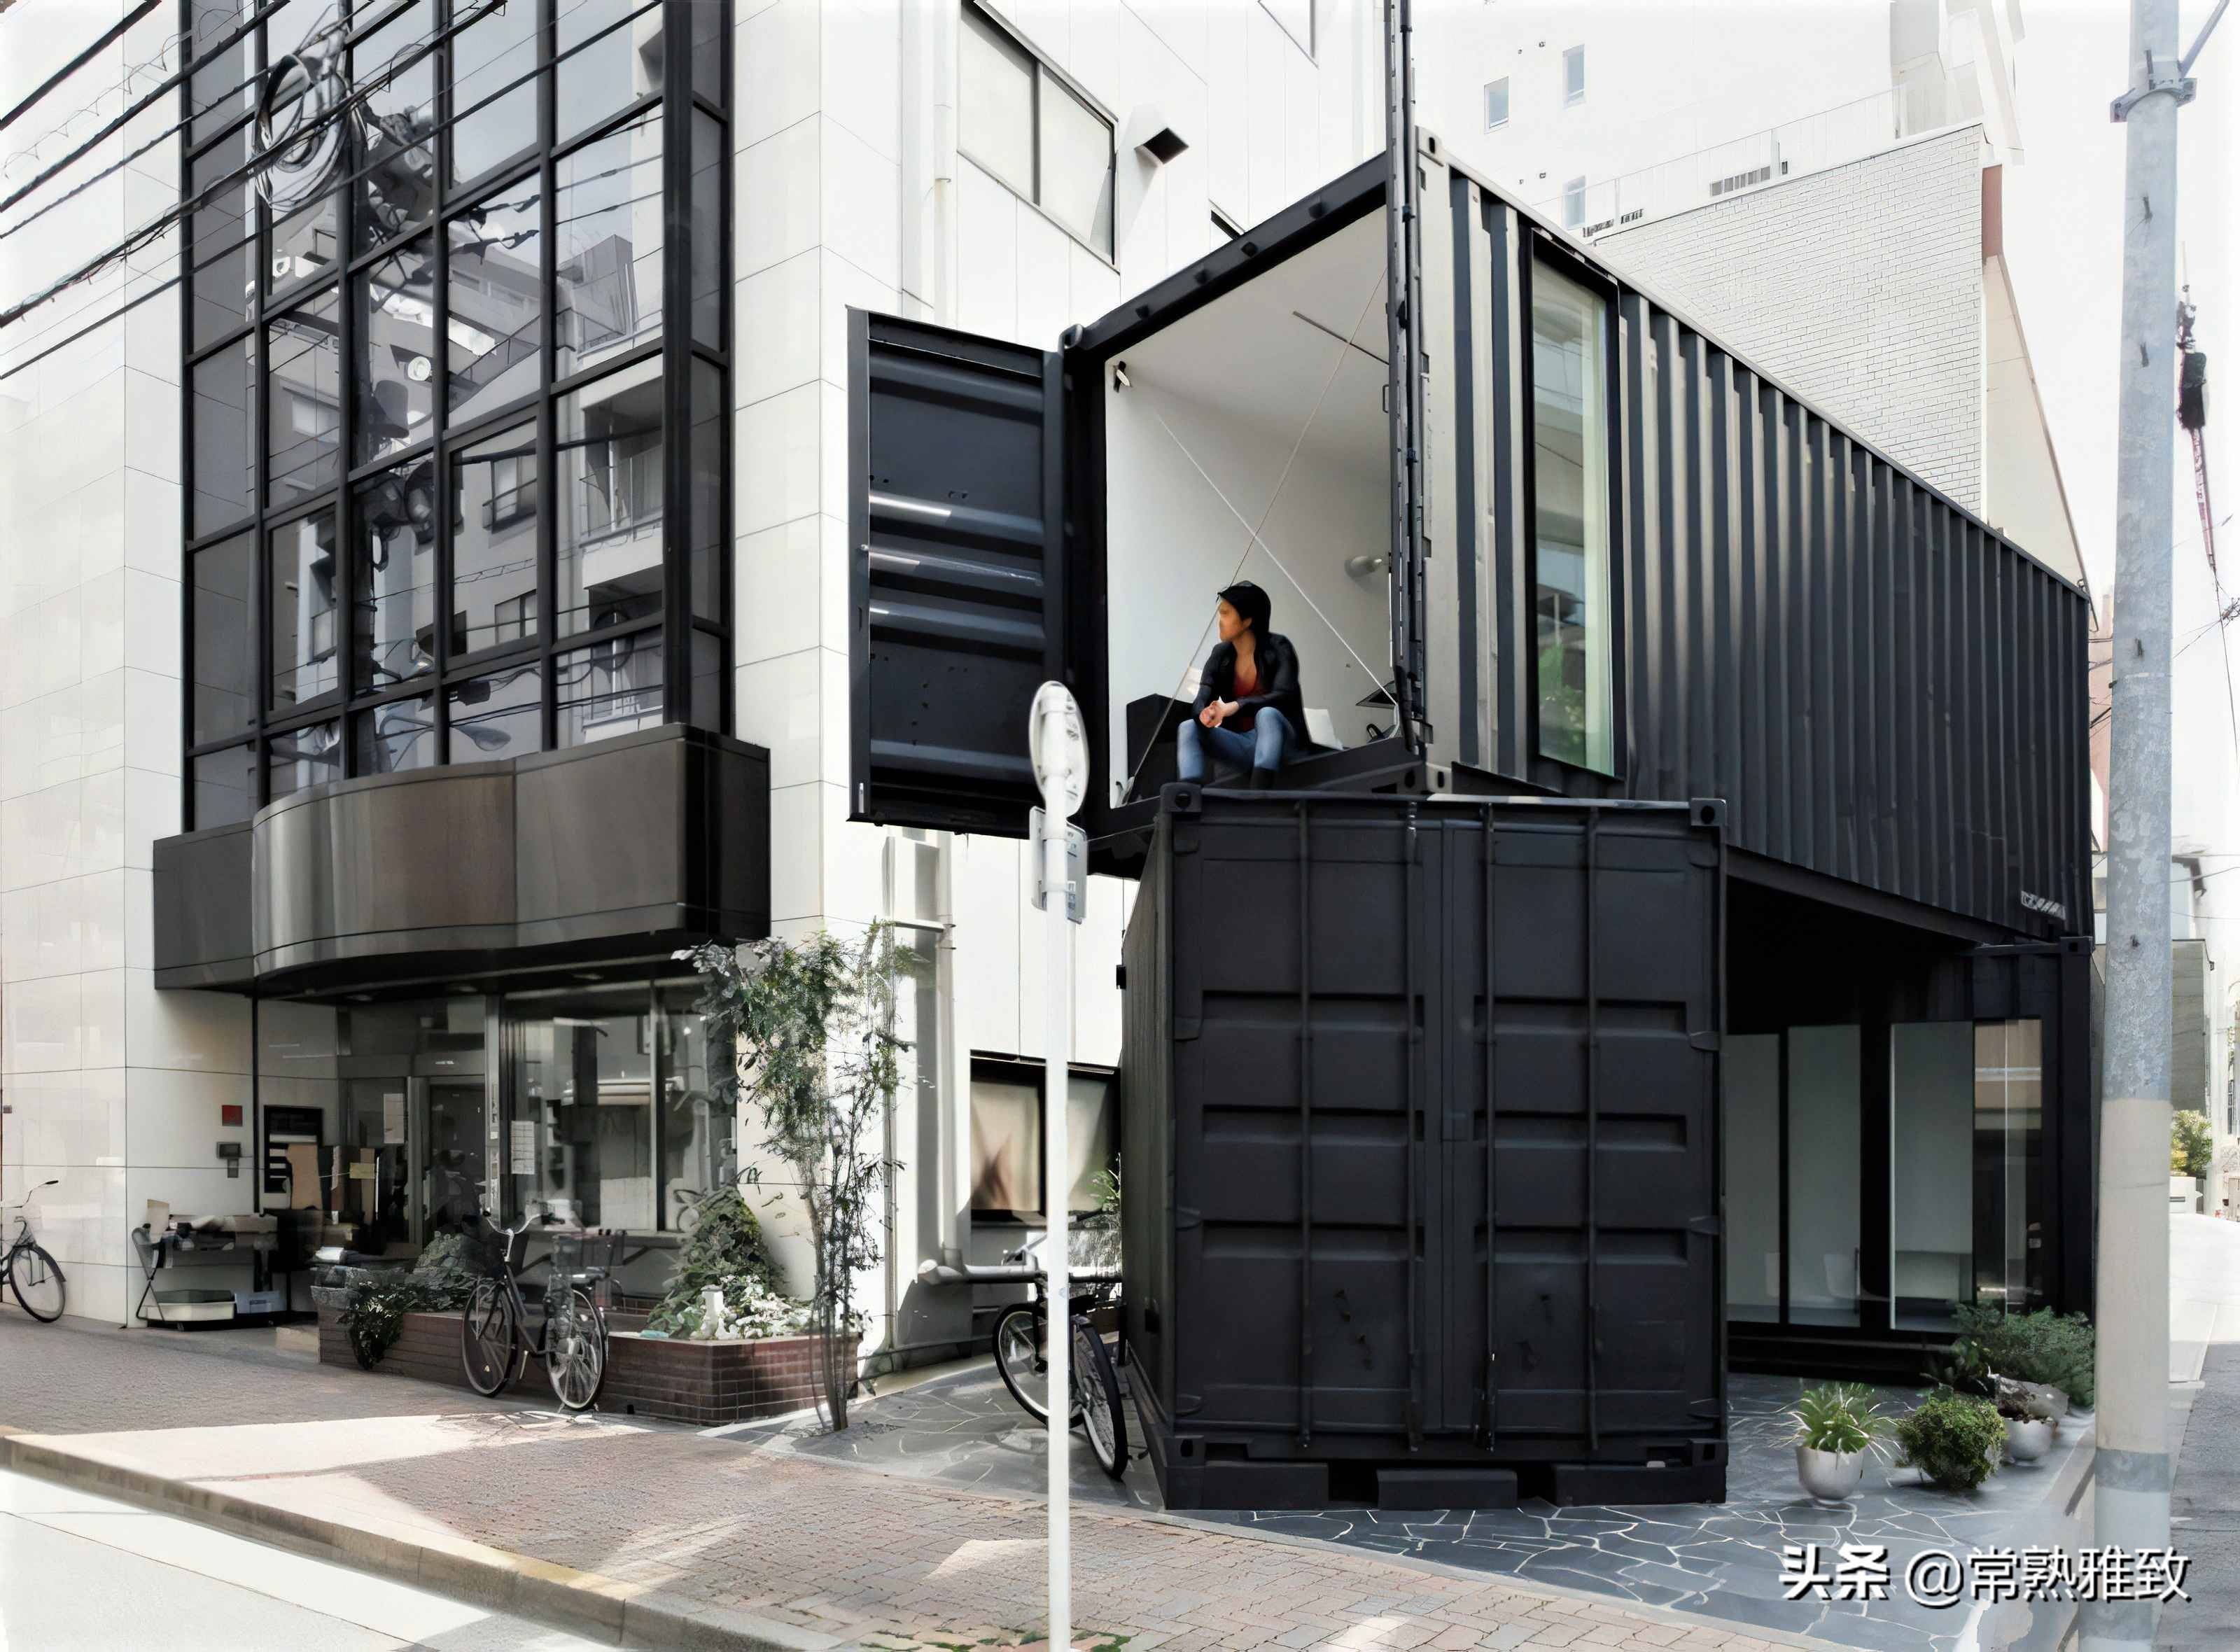 伫立在日本街头的集装箱工作室,外观时尚新颖,里面别有洞天